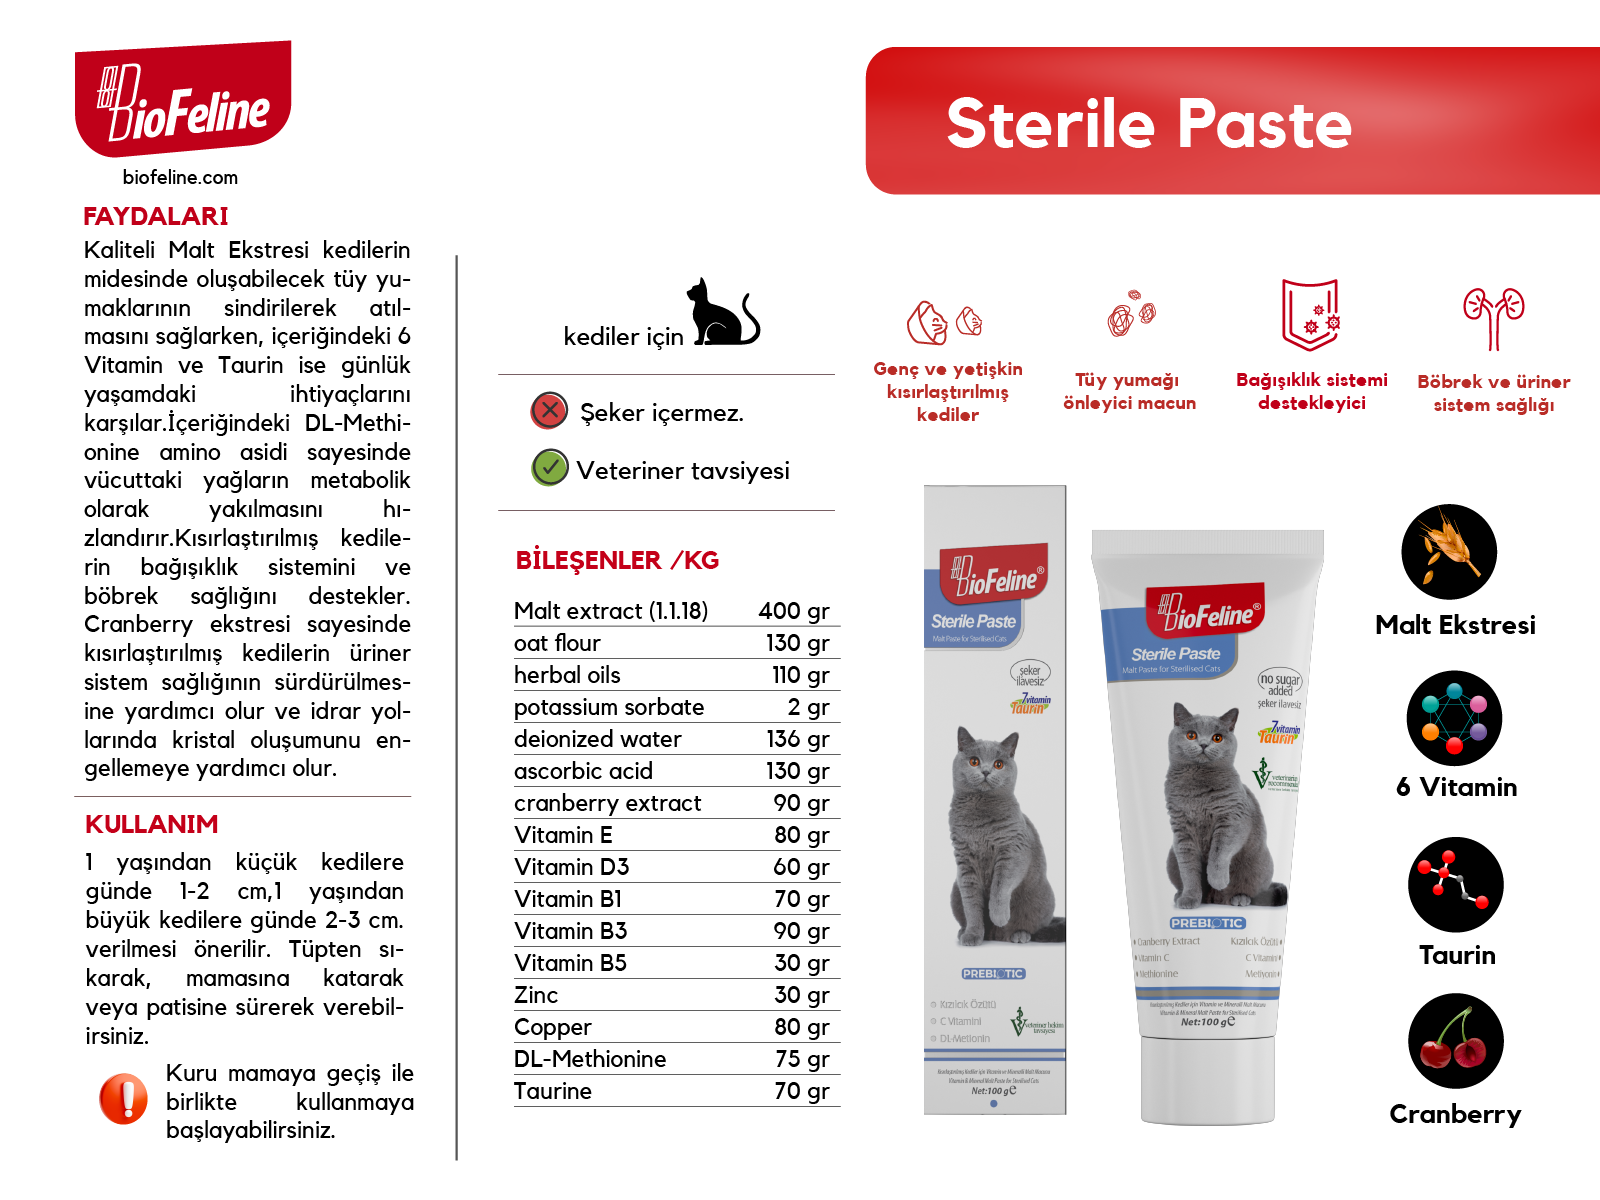 Sterile Paste 100g & Sterile Paste 100g (Sterile Paste 30g Hediye)